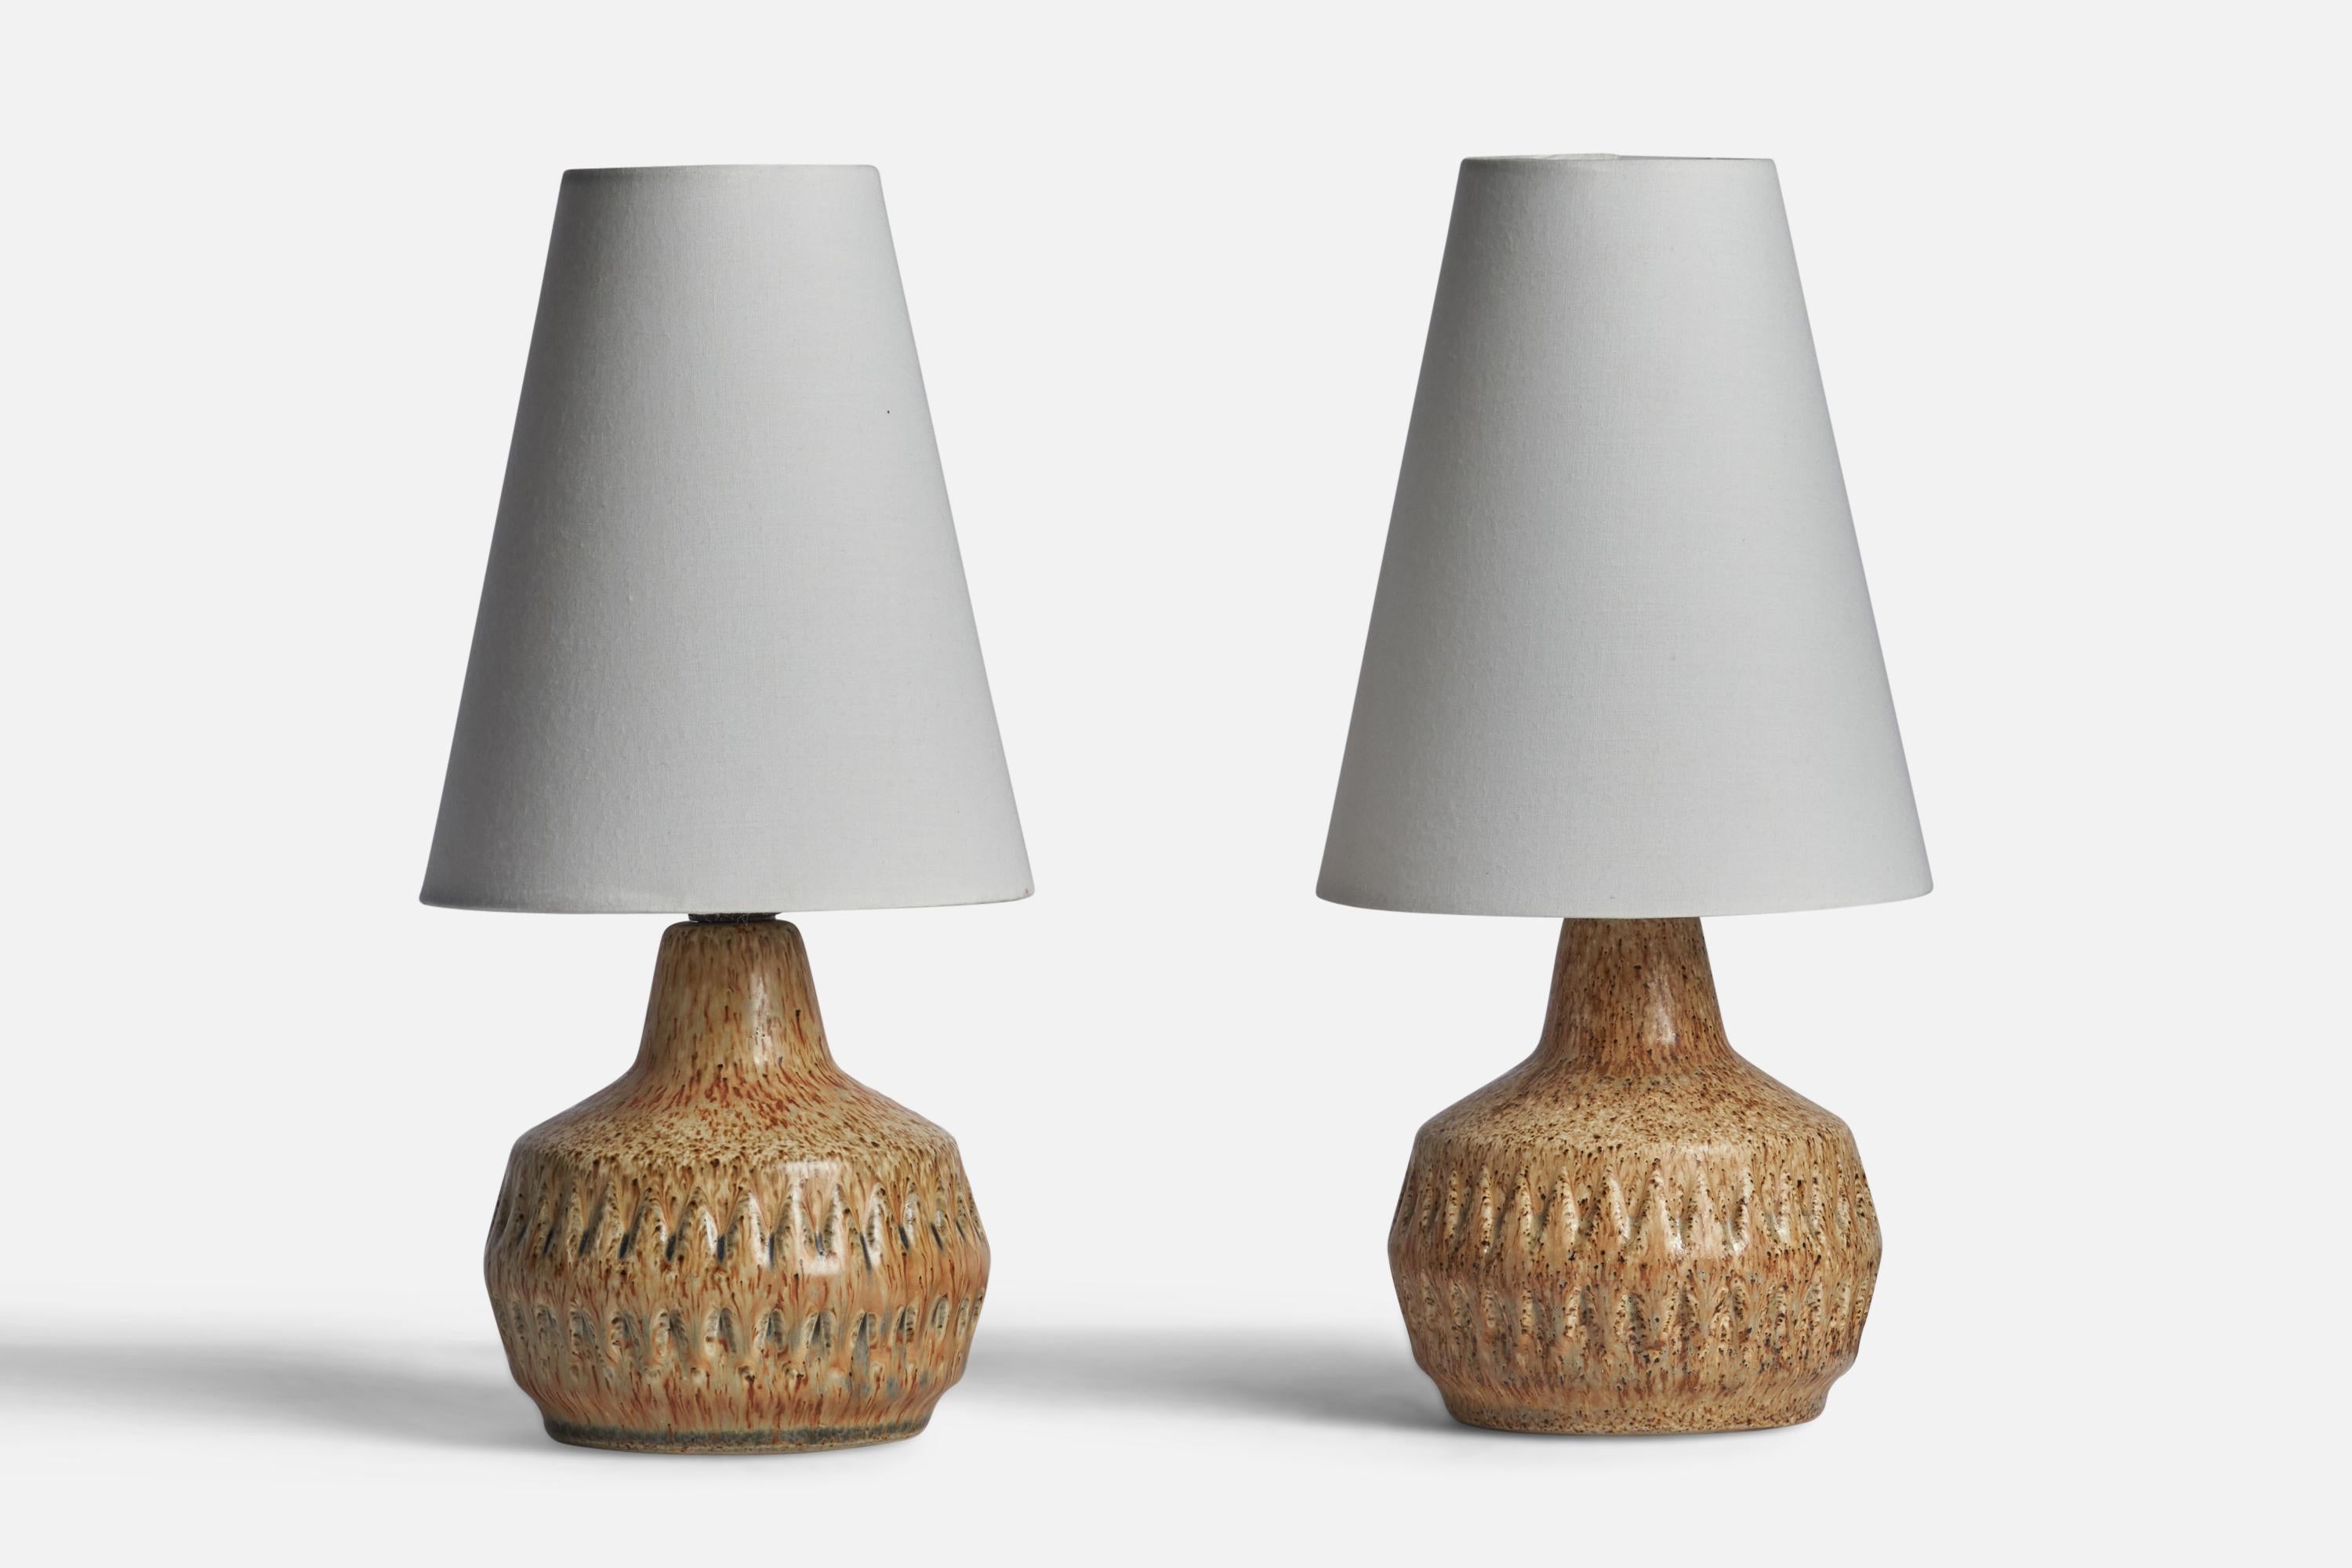 Ein Paar beige glasierte Steingut-Tischlampen, entworfen von Bruno Karlsson und hergestellt von Ego Stengods, Schweden, ca. 1960er Jahre.

Abmessungen der Lampe (Zoll): 7